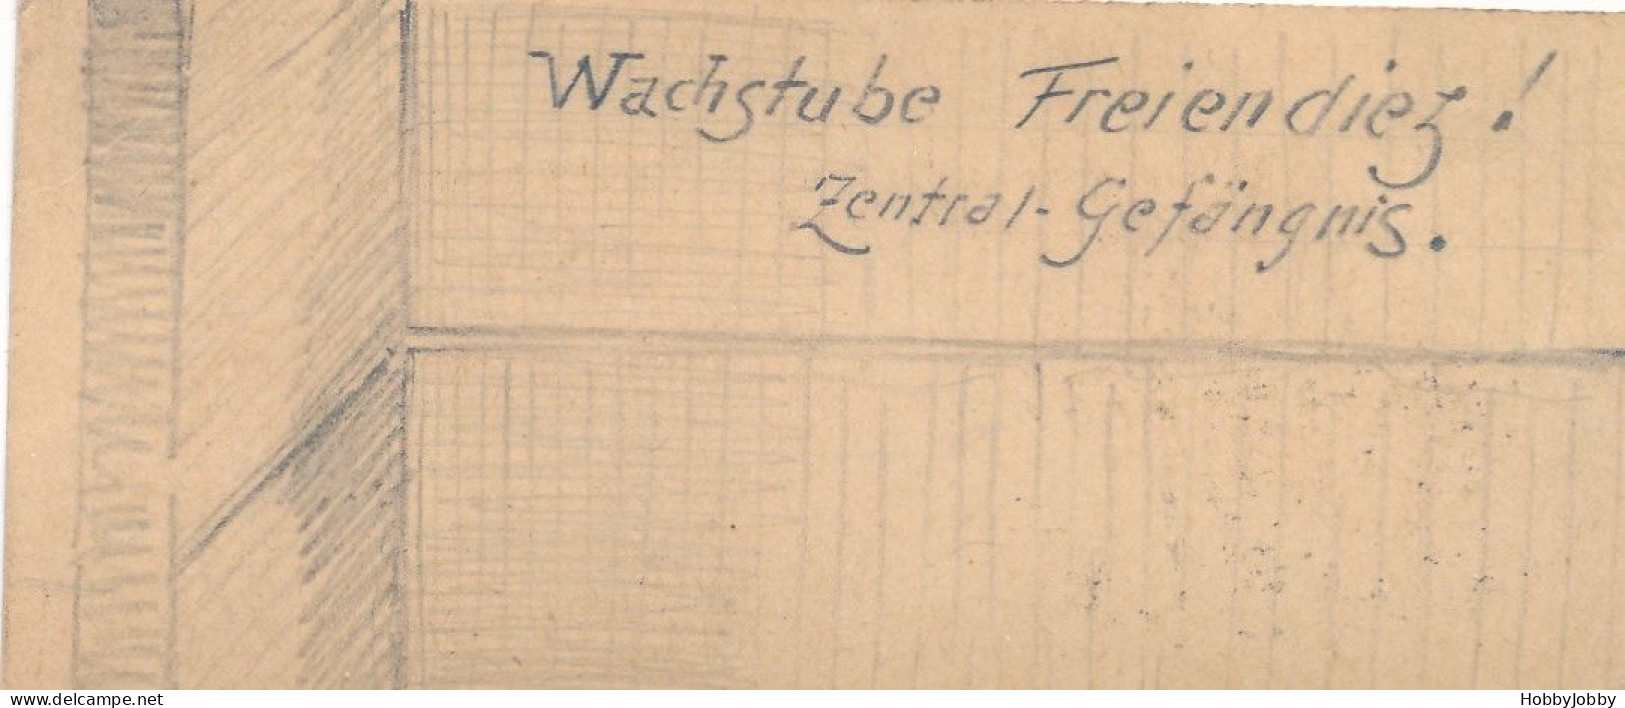 2 Stück I. WK Handgezeichnet-Bleistift:Wach-Stube Kaiser-Wilhelm-Kaserne + Wachstube-Freiendiez! Zentral Gefägnis. - Casernes